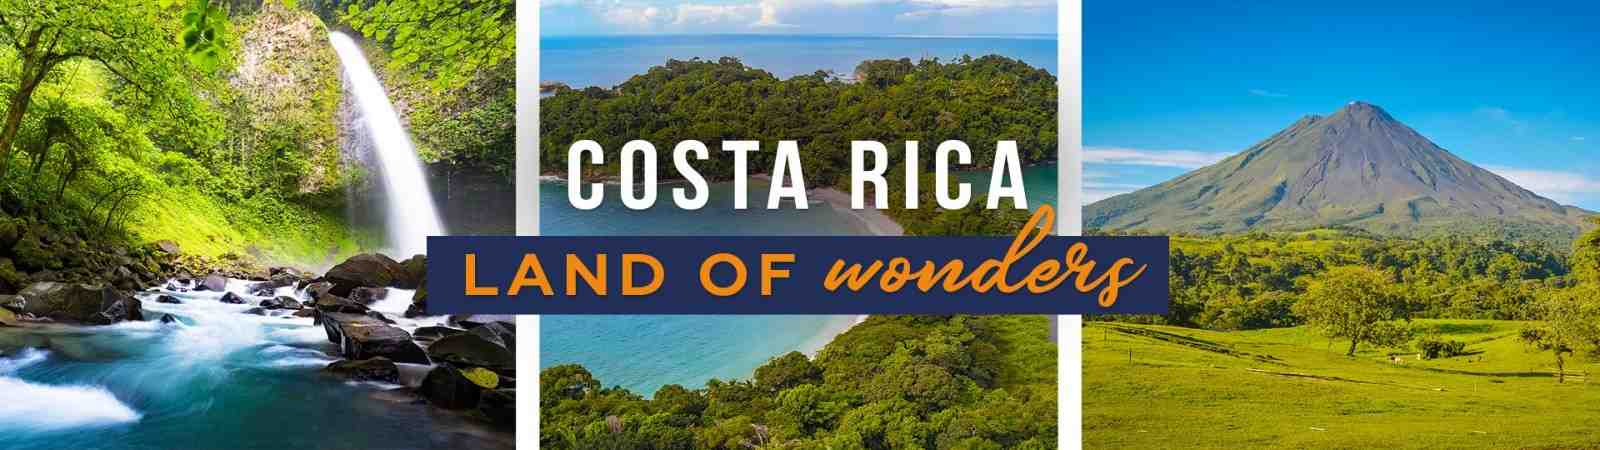 Comment sont les plages au Costa Rica ?